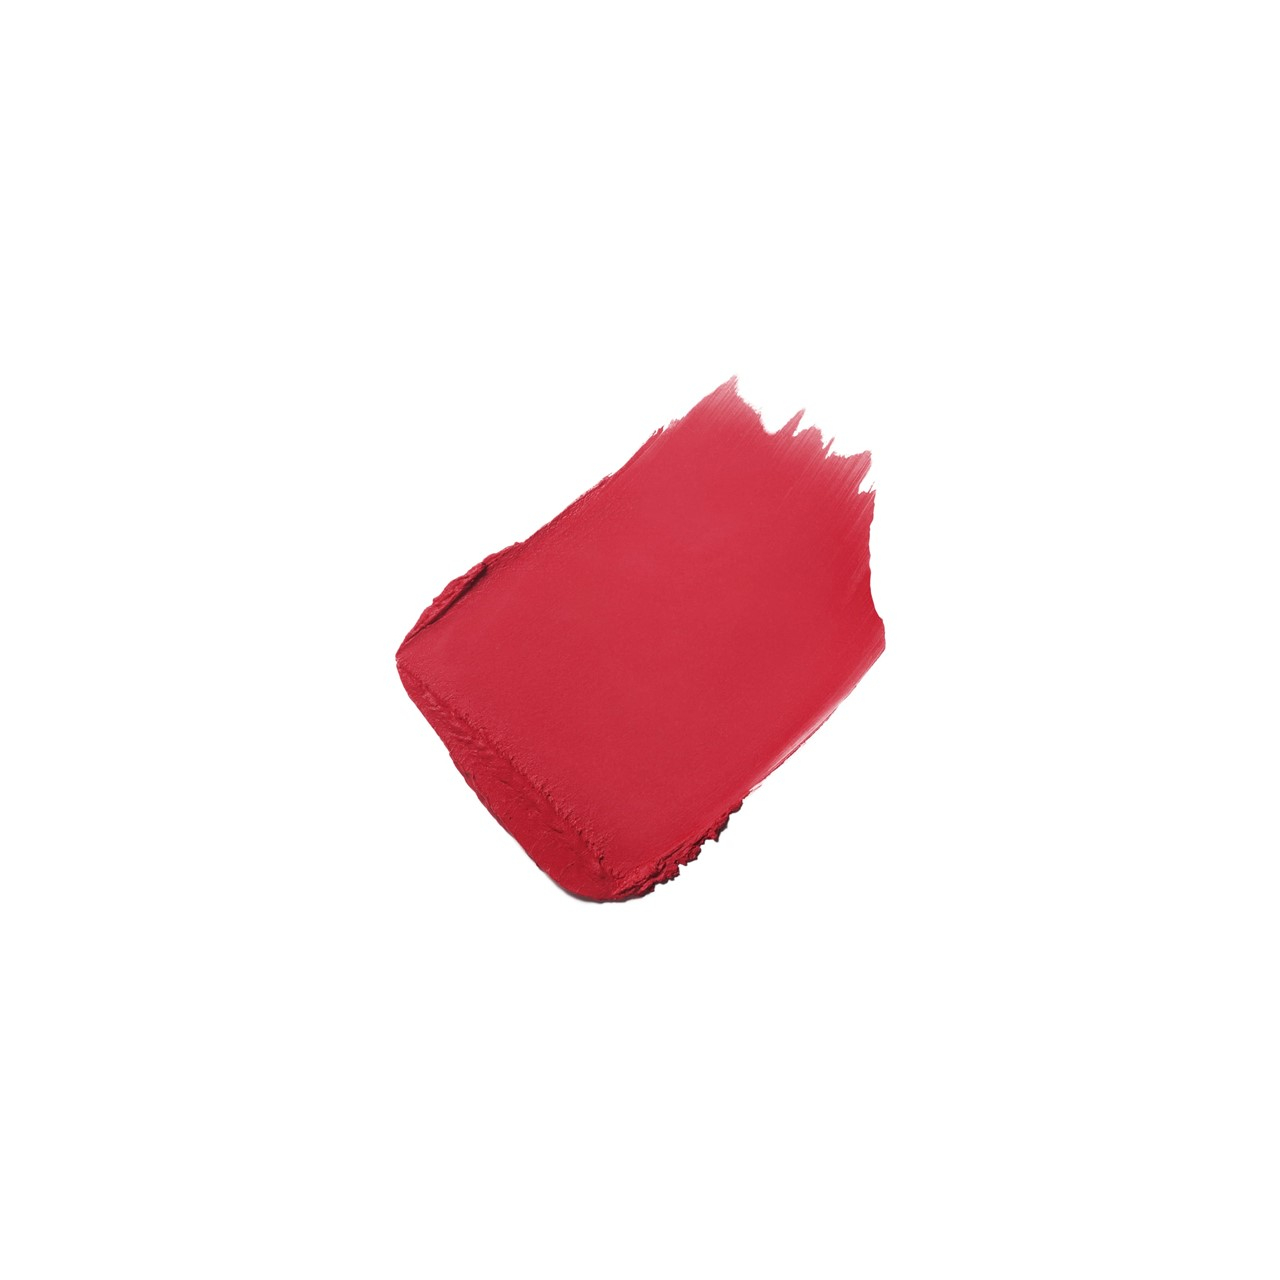 CHANEL Rouge Allure Velvet Luminous Matte Lip Colour - Reviews